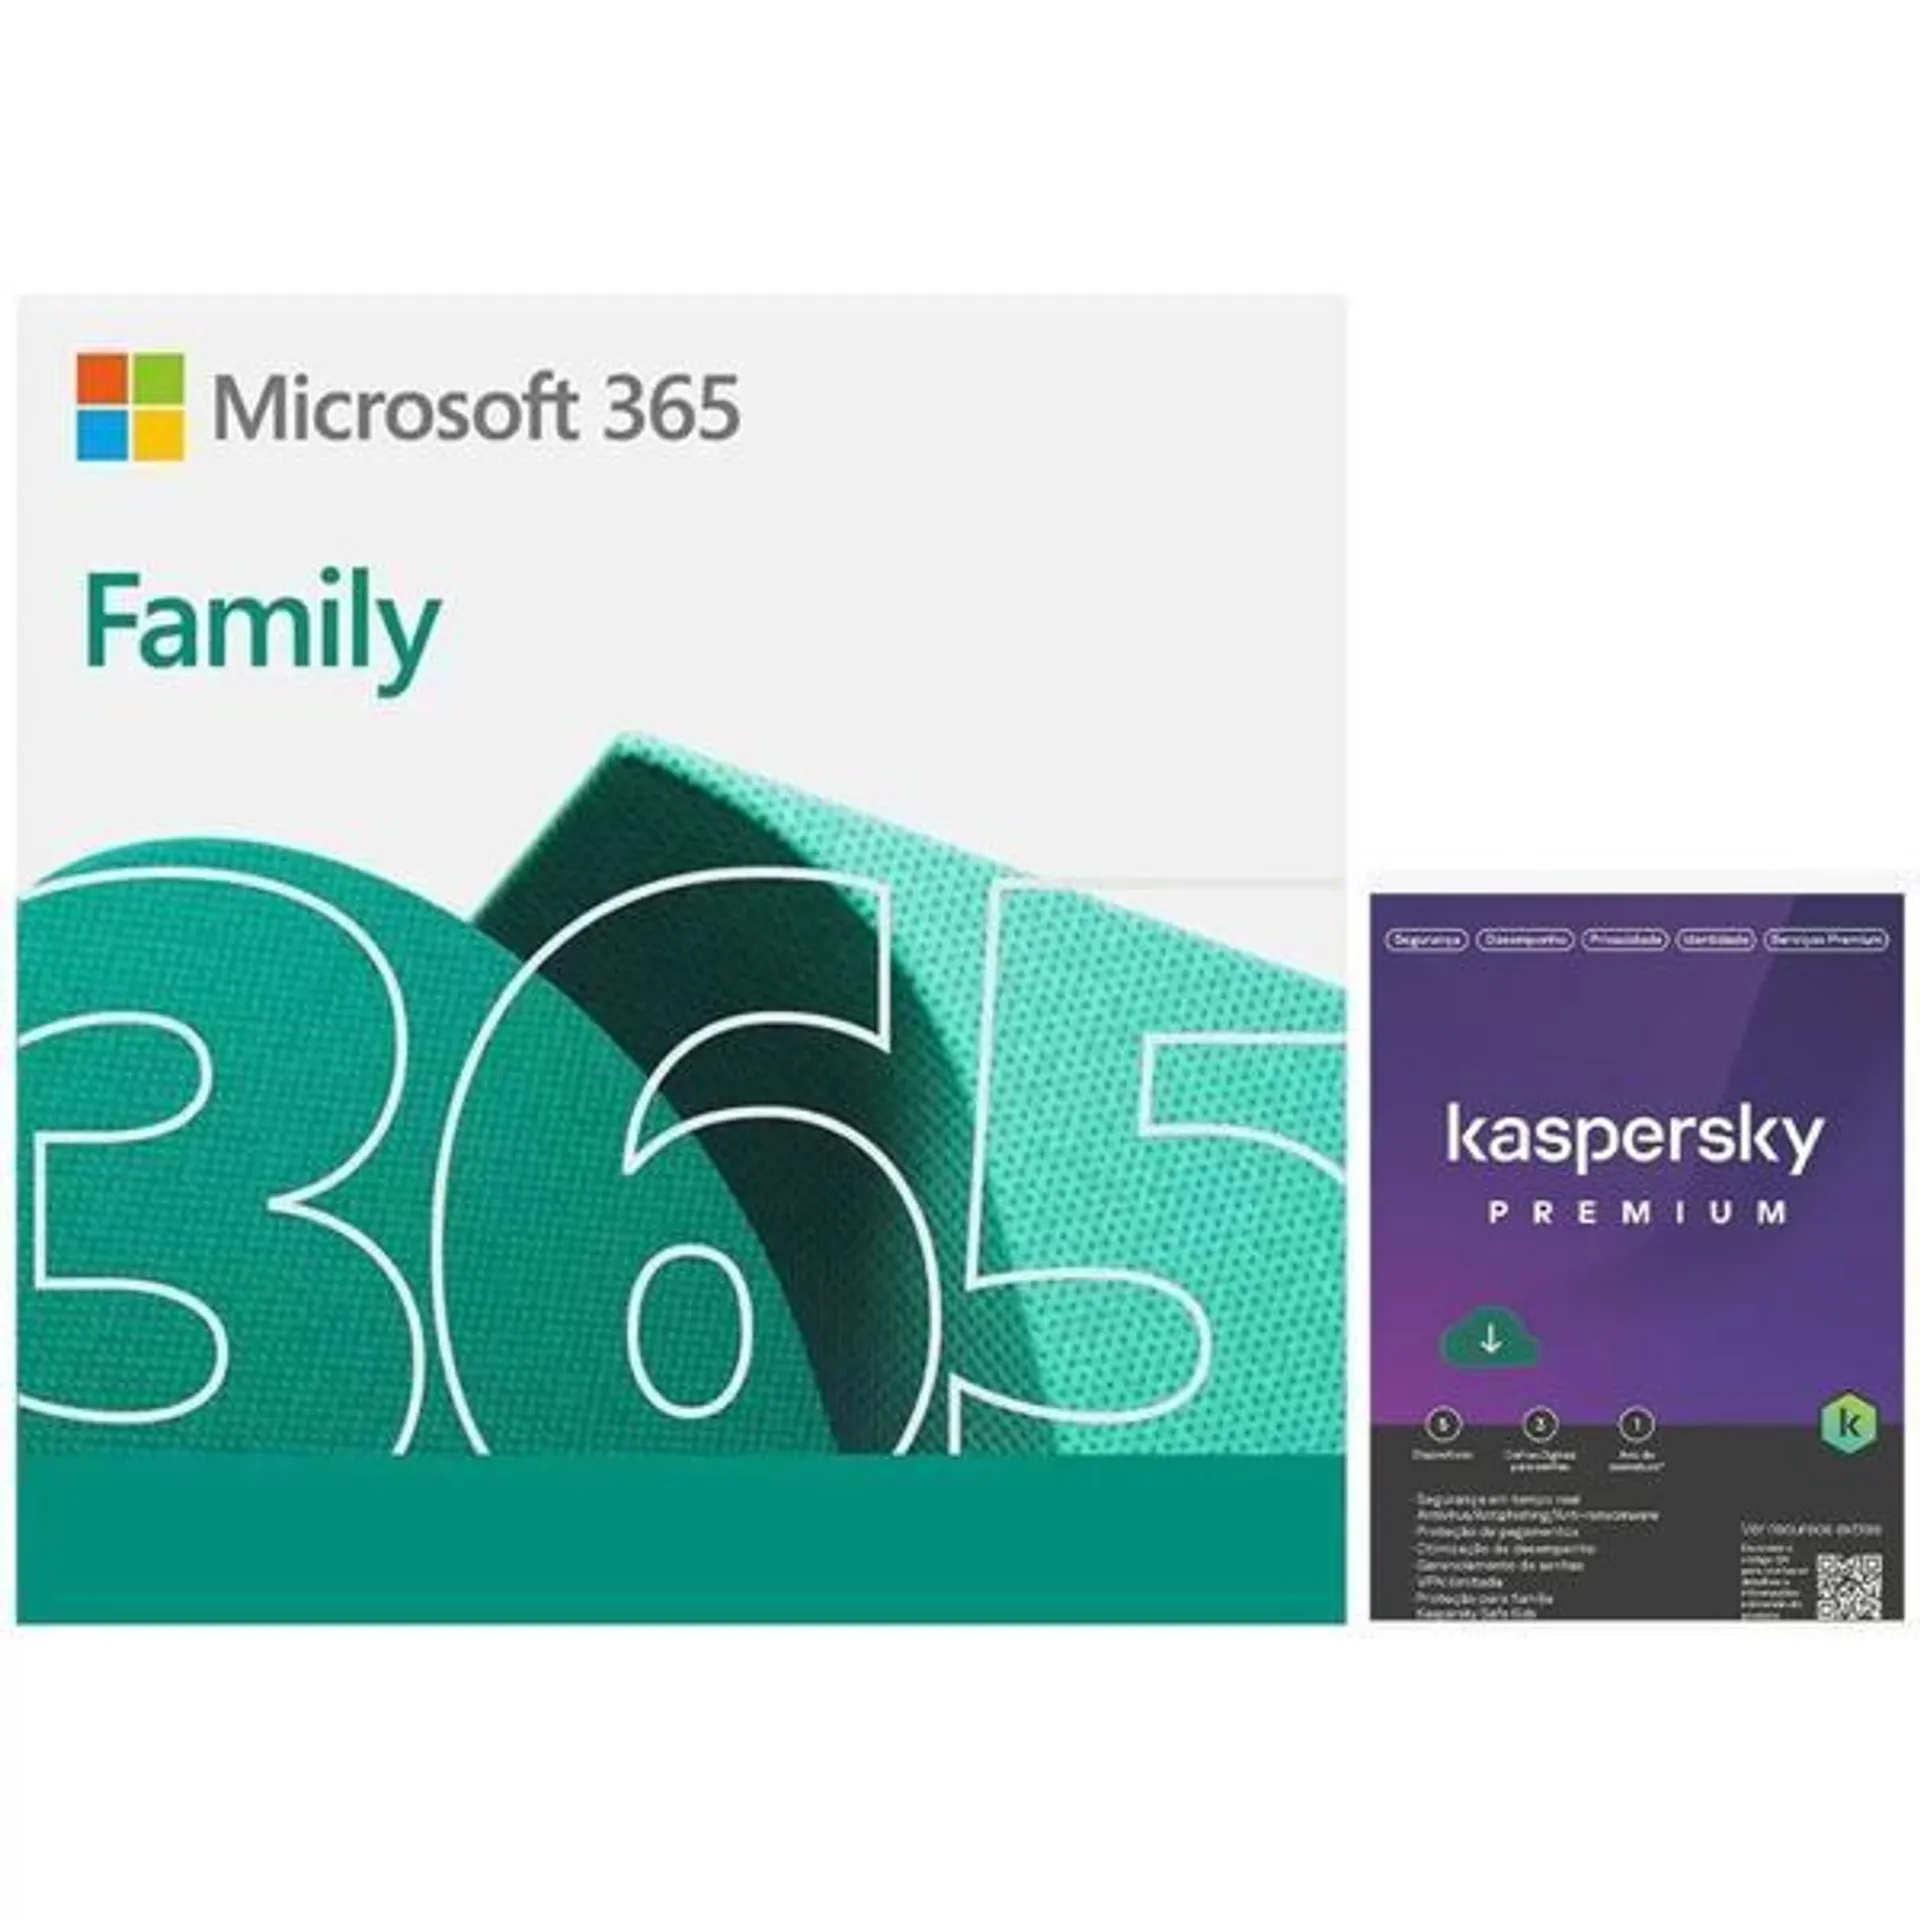 Microsoft 365 Family 1 licença para até 6 usuários Assinatura 15 meses e Kaspersky Antivírus Premium para 5 dispositivos Licença 12 meses - Digital para DOWNLOAD 1 UN